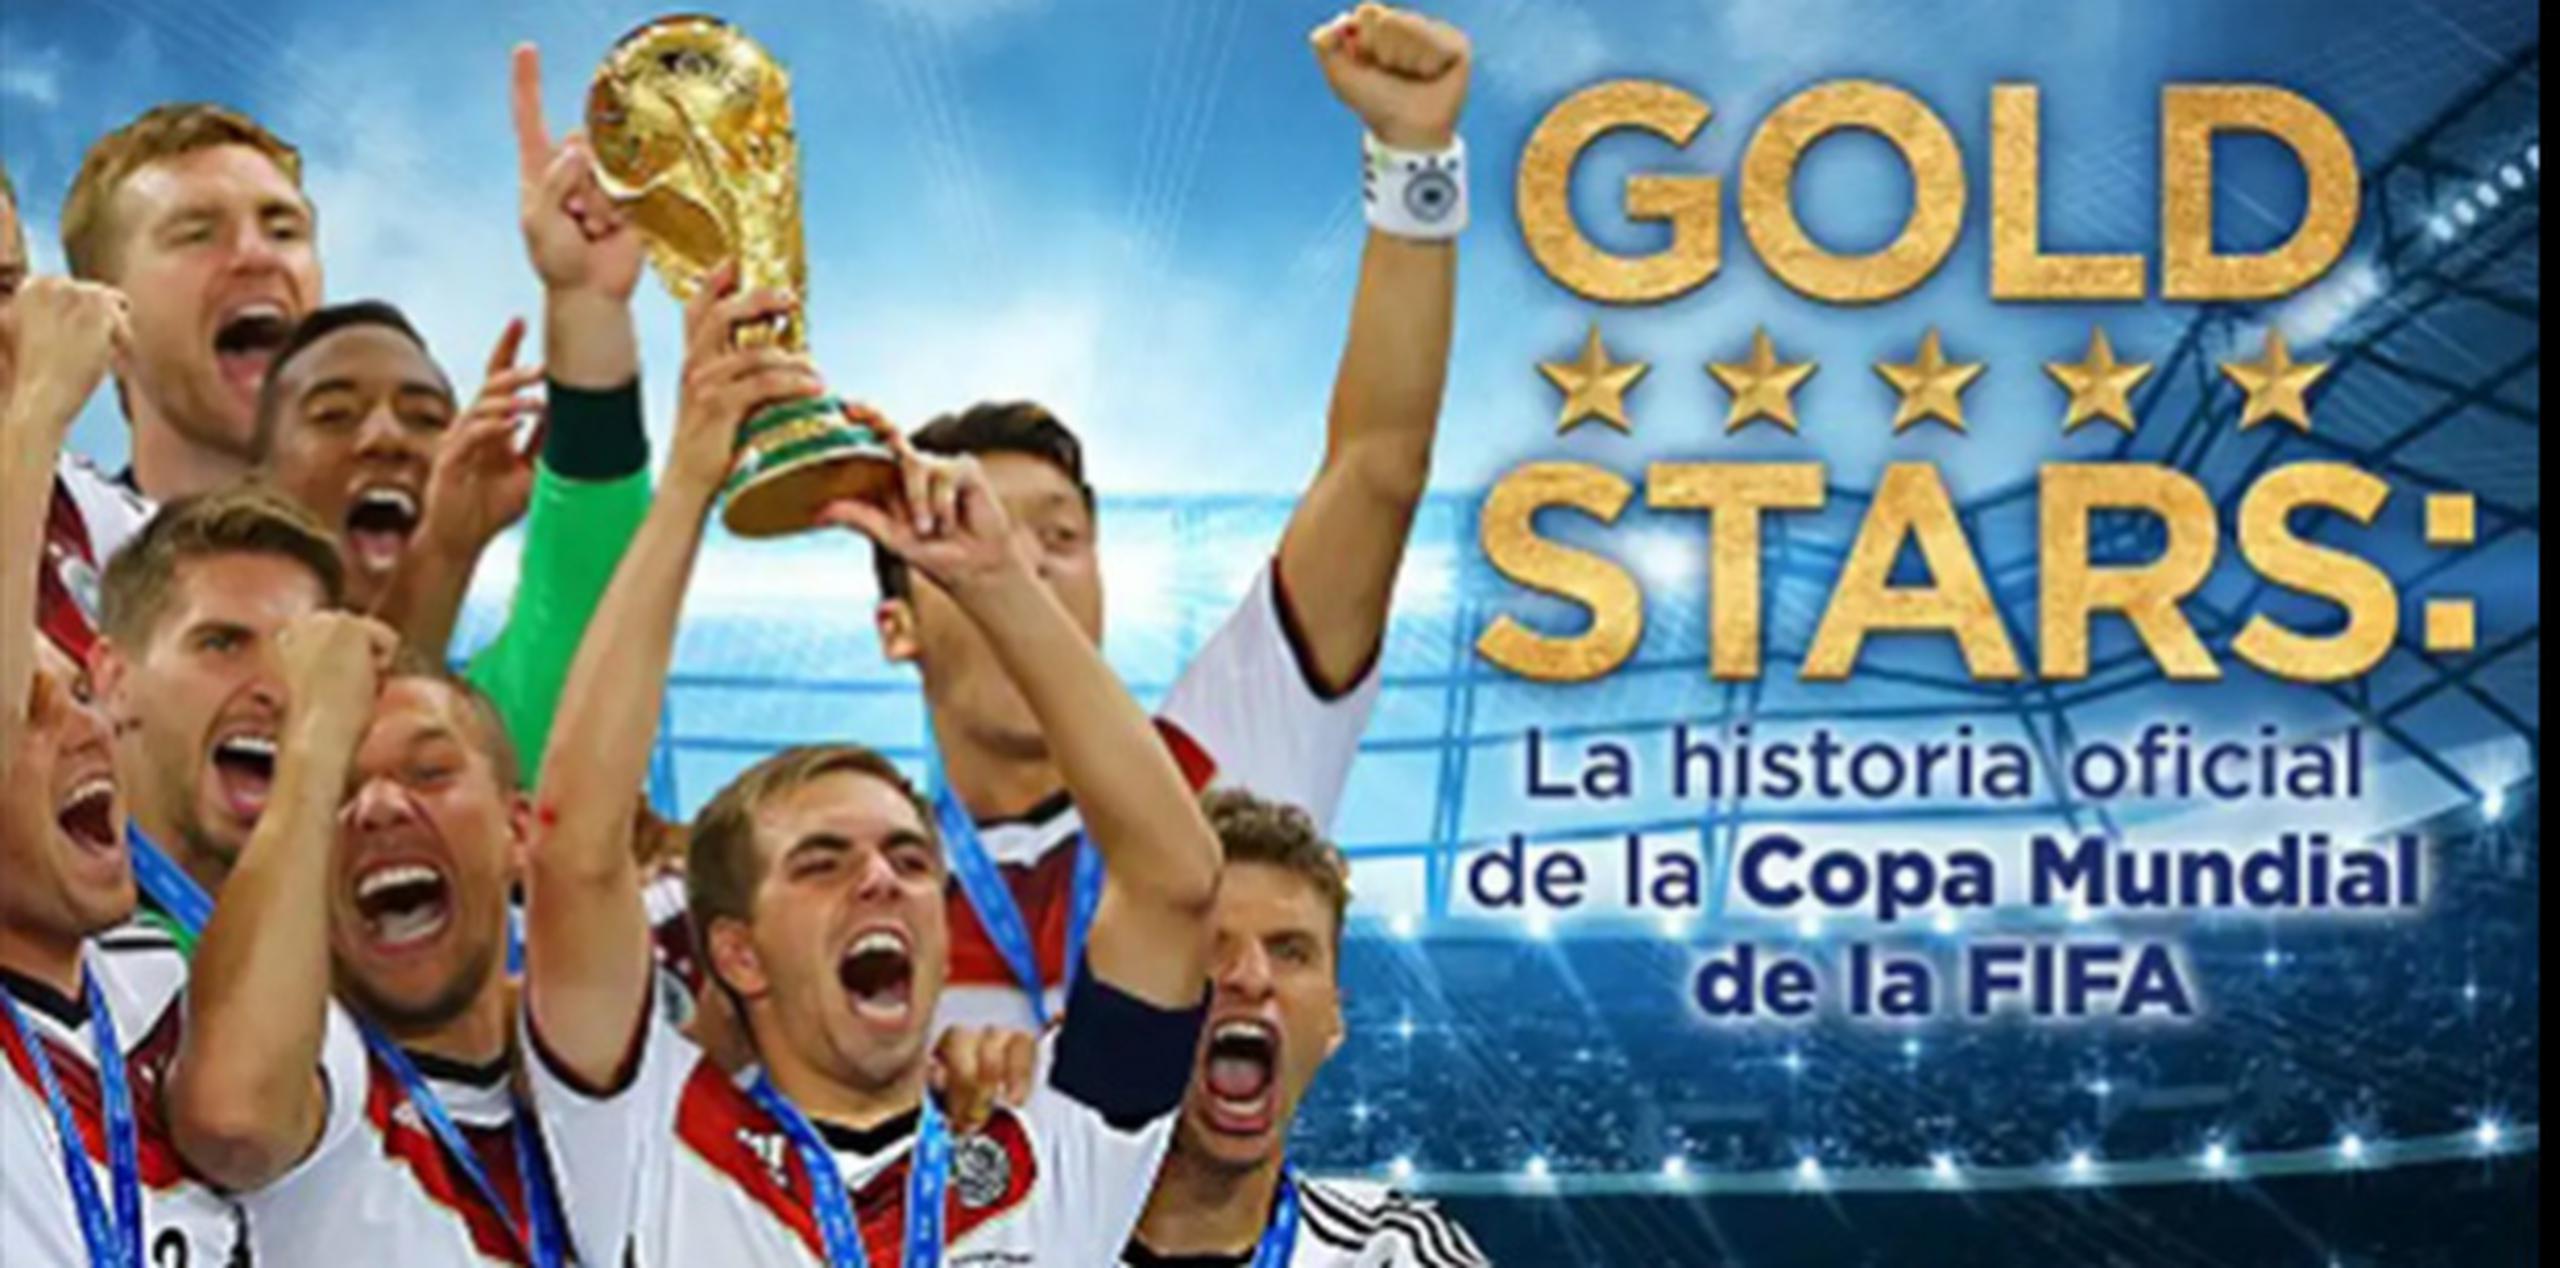 Siguiendo con la tónica de destacar lo mejor de la historia del evento, Netflix estrena mañana "Gold Stars: La historia oficial de la Copa Mundial de la FIFA". (Captura)